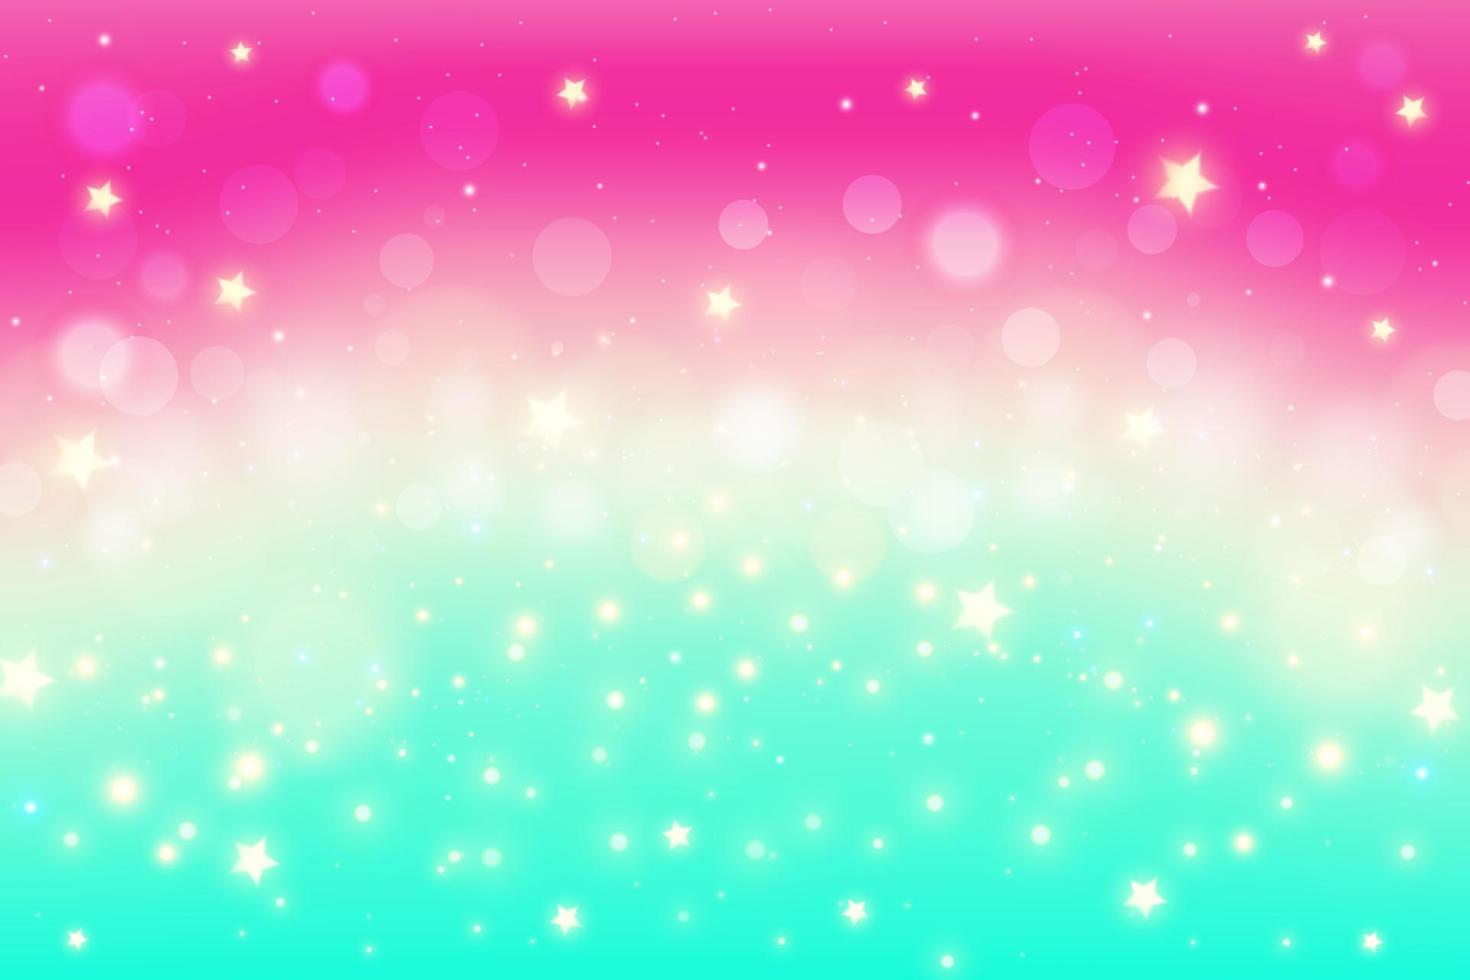 fundo gradiente rosa turquesa para design de papel de parede. fundo fluido legal. céu do nascer do sol com estrelas e brilhos. vetor. vetor